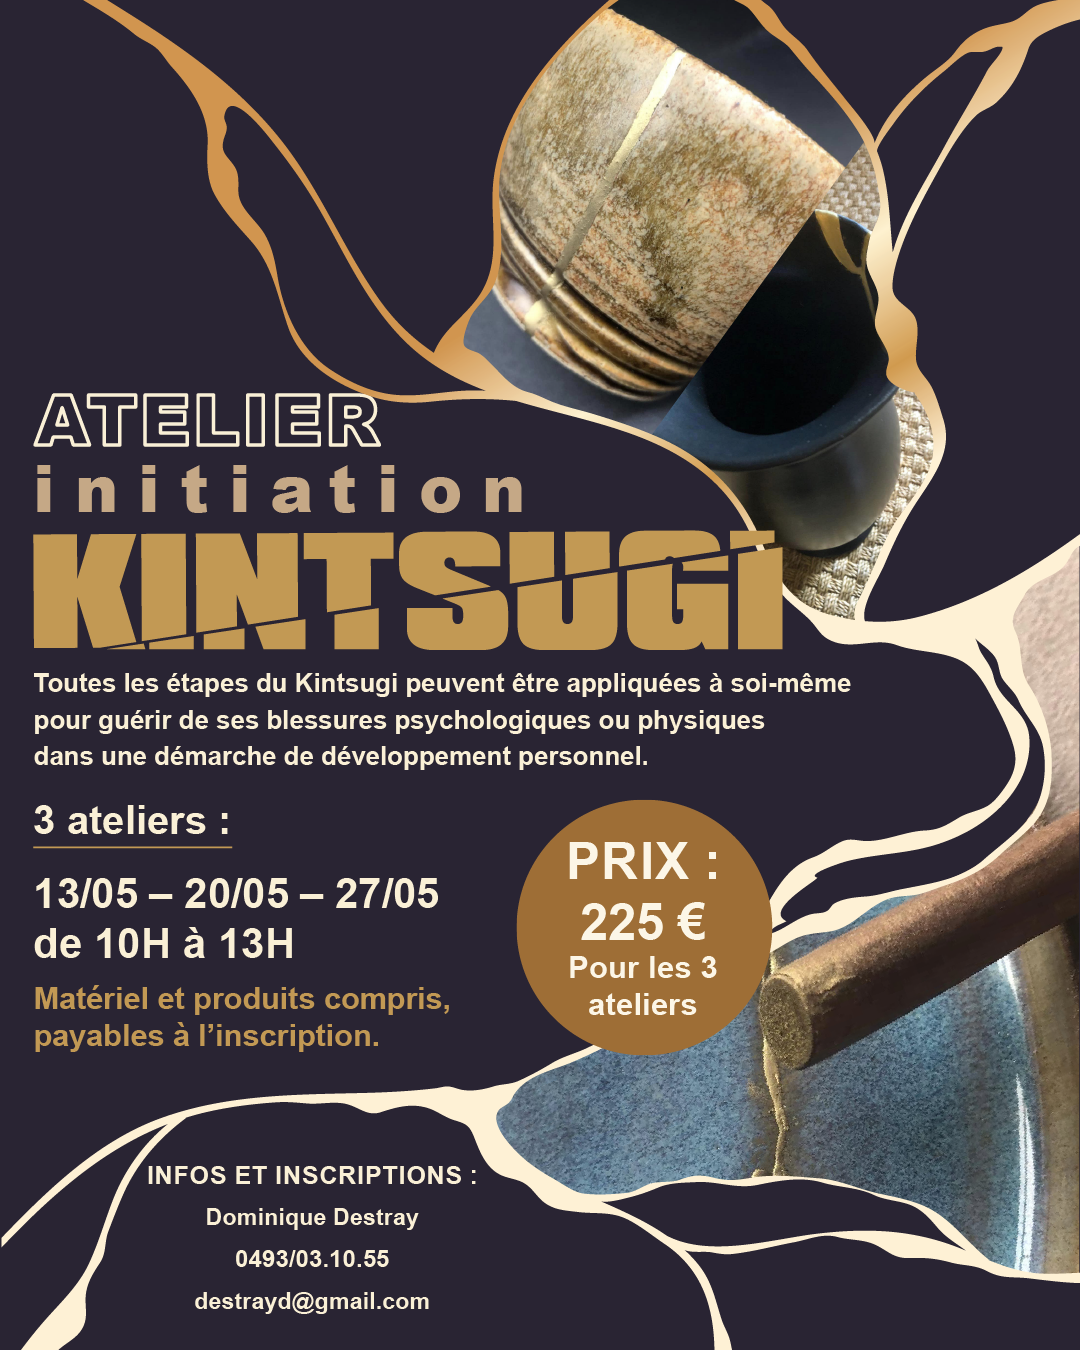 Ateliers Créatifs Kintsugi - Initiation à La Galerie d'Art by Culture Liège à LIEGE